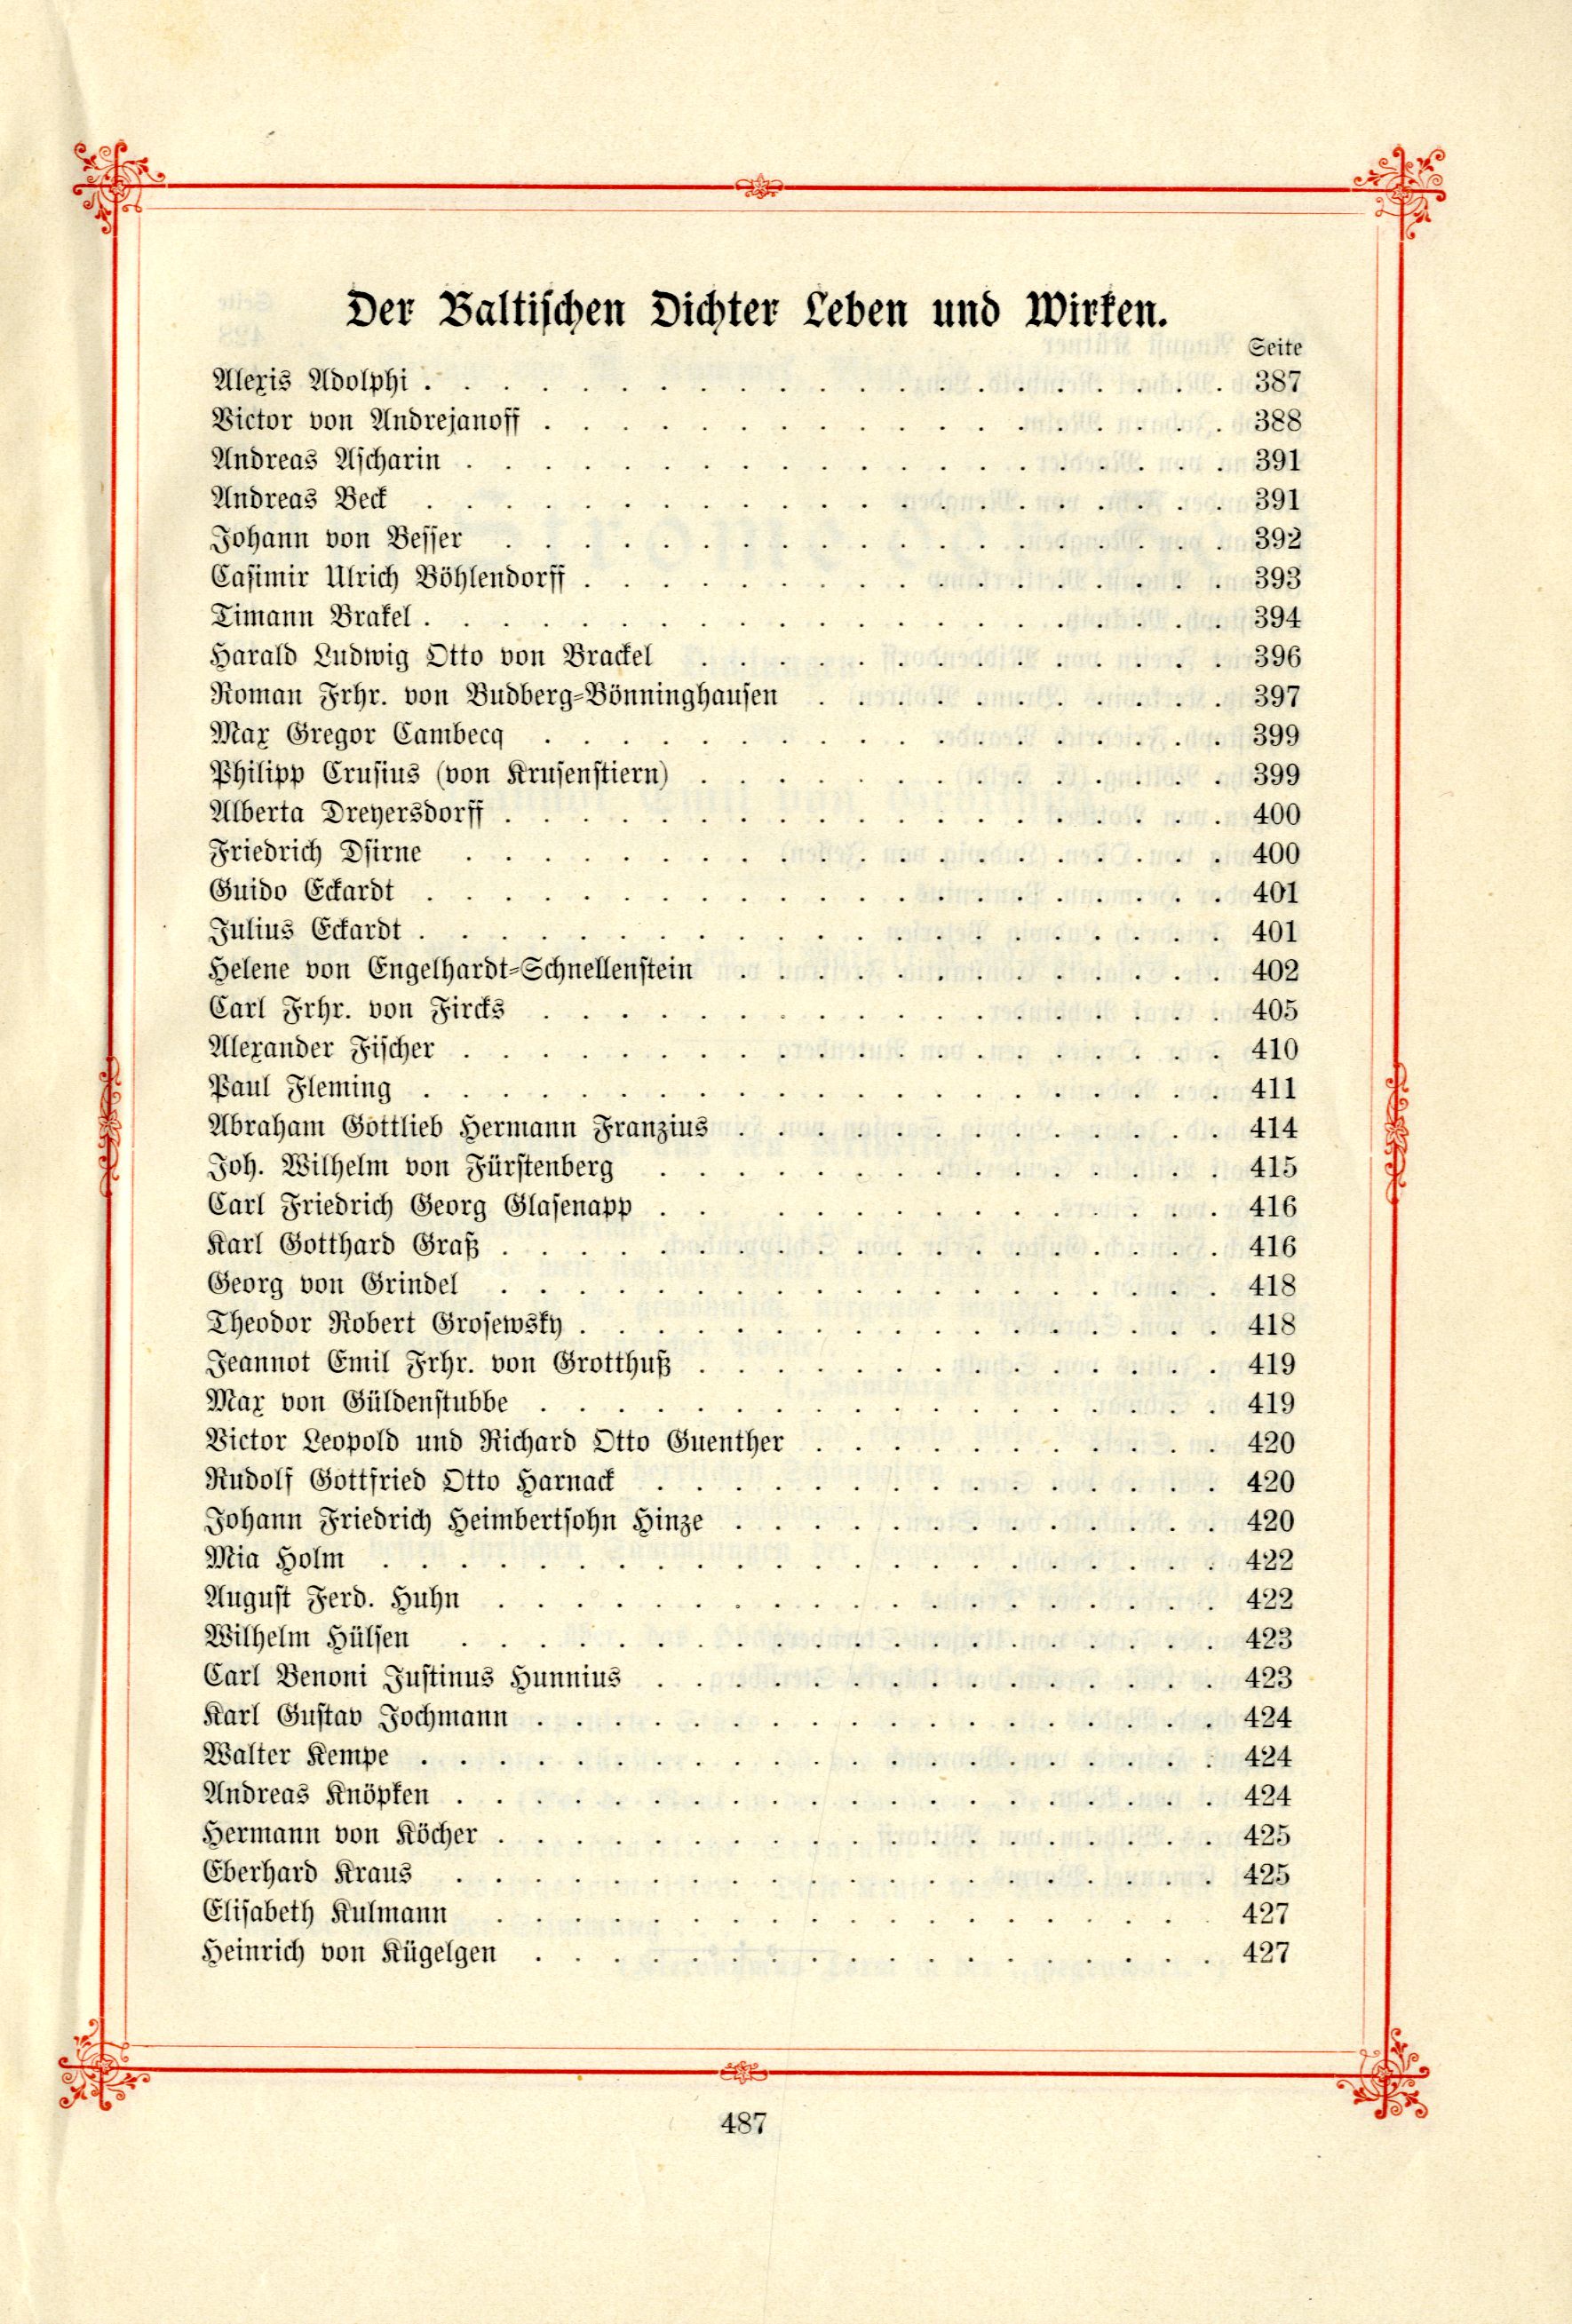 Das Baltische Dichterbuch (1895) | 533. (487) Inhaltsverzeichnis